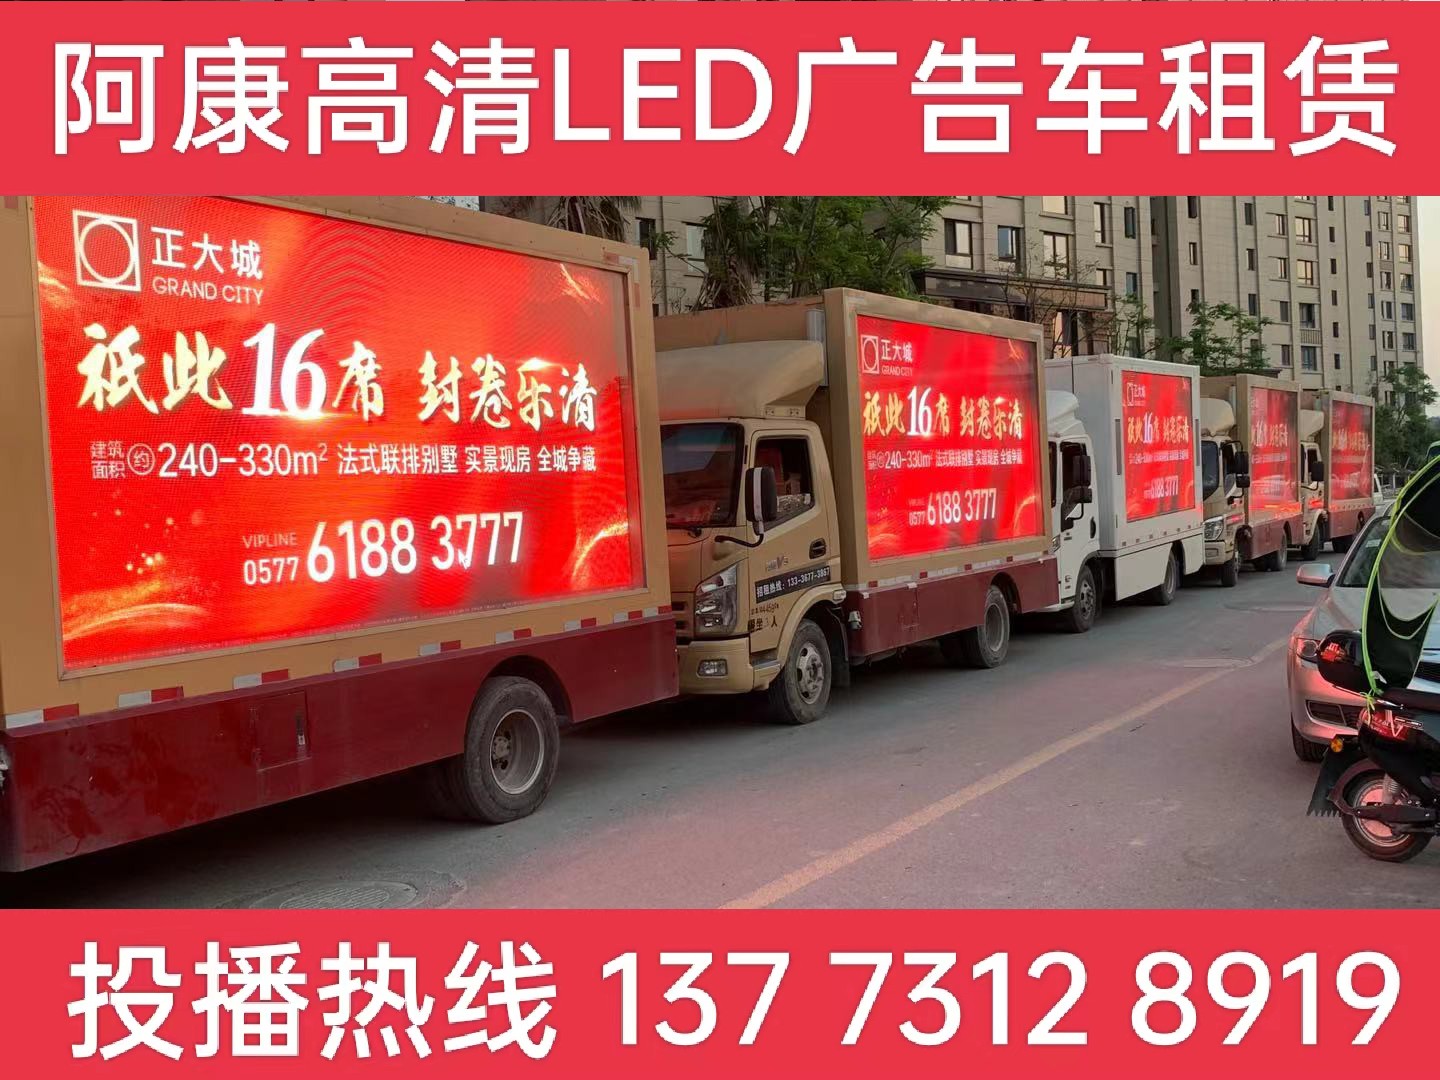 广陵区LED广告车出租